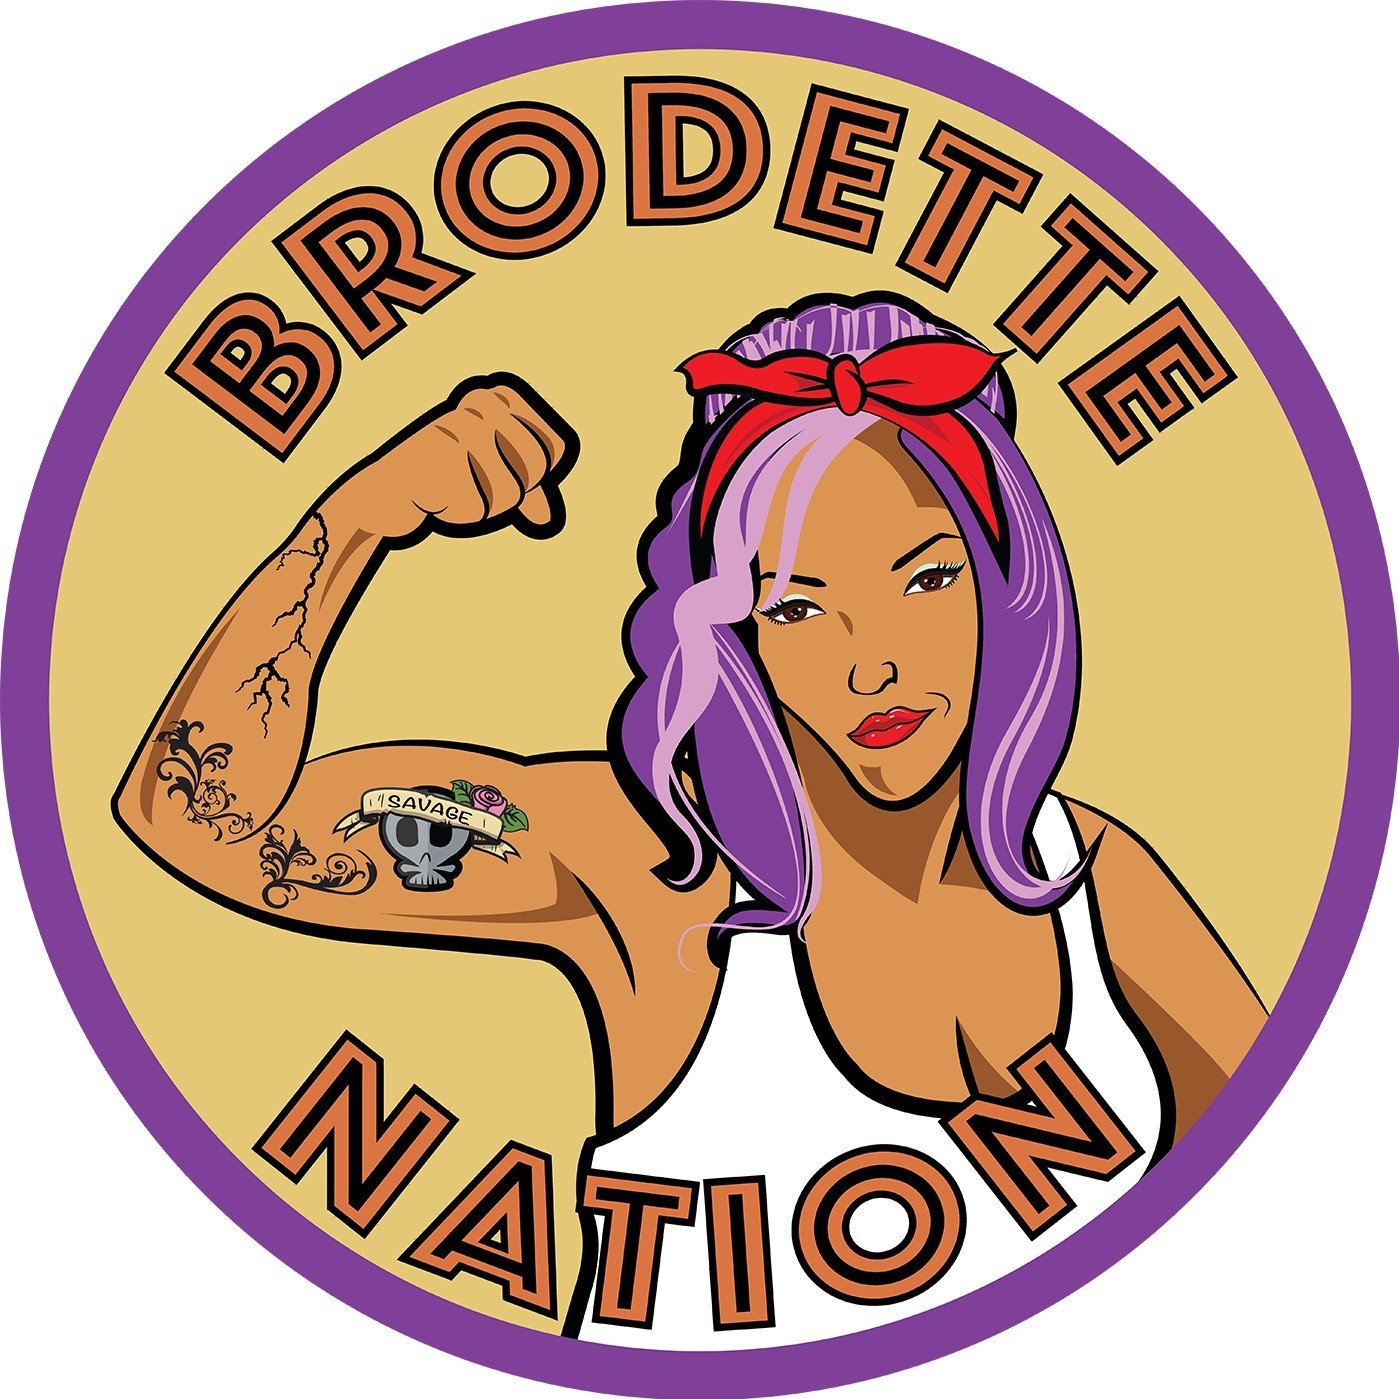 Brodette Nation Podcast